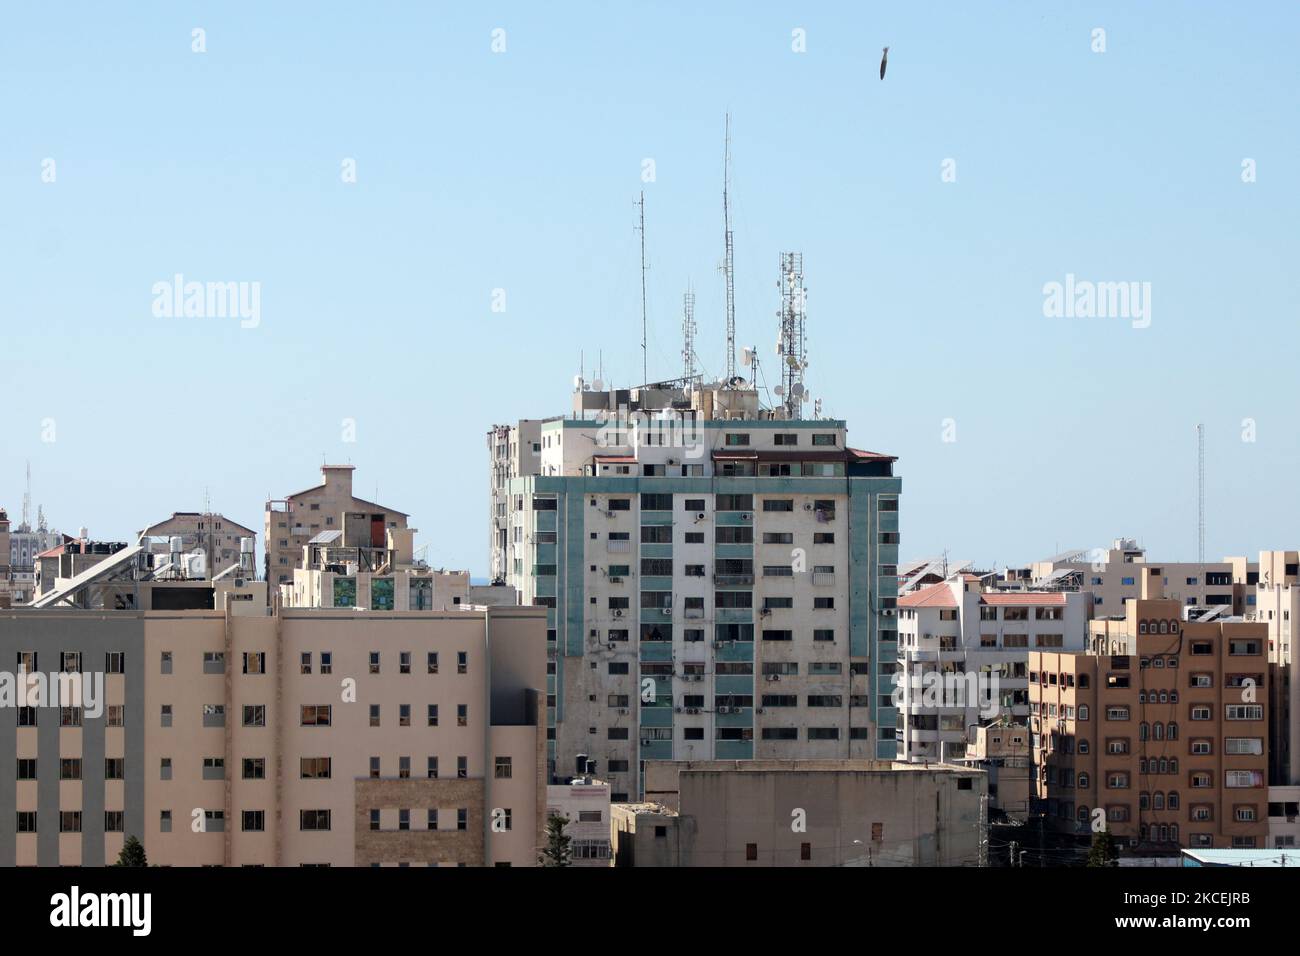 Während eines israelischen Luftanschlags in Gaza-Stadt, der von der palästinensischen Hamas-Bewegung kontrolliert wird, am 15. Mai 2021, trifft eine Luftbombe auf den Jala-Turm. - Israelische Luftangriffe schlugen den Gazastreifen ein, töteten 10 Mitglieder einer Großfamilie und zerstörten ein wichtiges Mediengebäude, während palästinensische Kämpfer im Gegenzug unter Gewalt im Westjordanland Raketen abfeuerten. Die israelische Luftwaffe zielte auf den 13-stöckigen Jala Tower, in dem das in Katar ansässige Al-Jazeera-Fernsehen und die Nachrichtenagentur Associated Press untergebracht sind. (Foto von Majdi Fathi/NurPhoto) Stockfoto